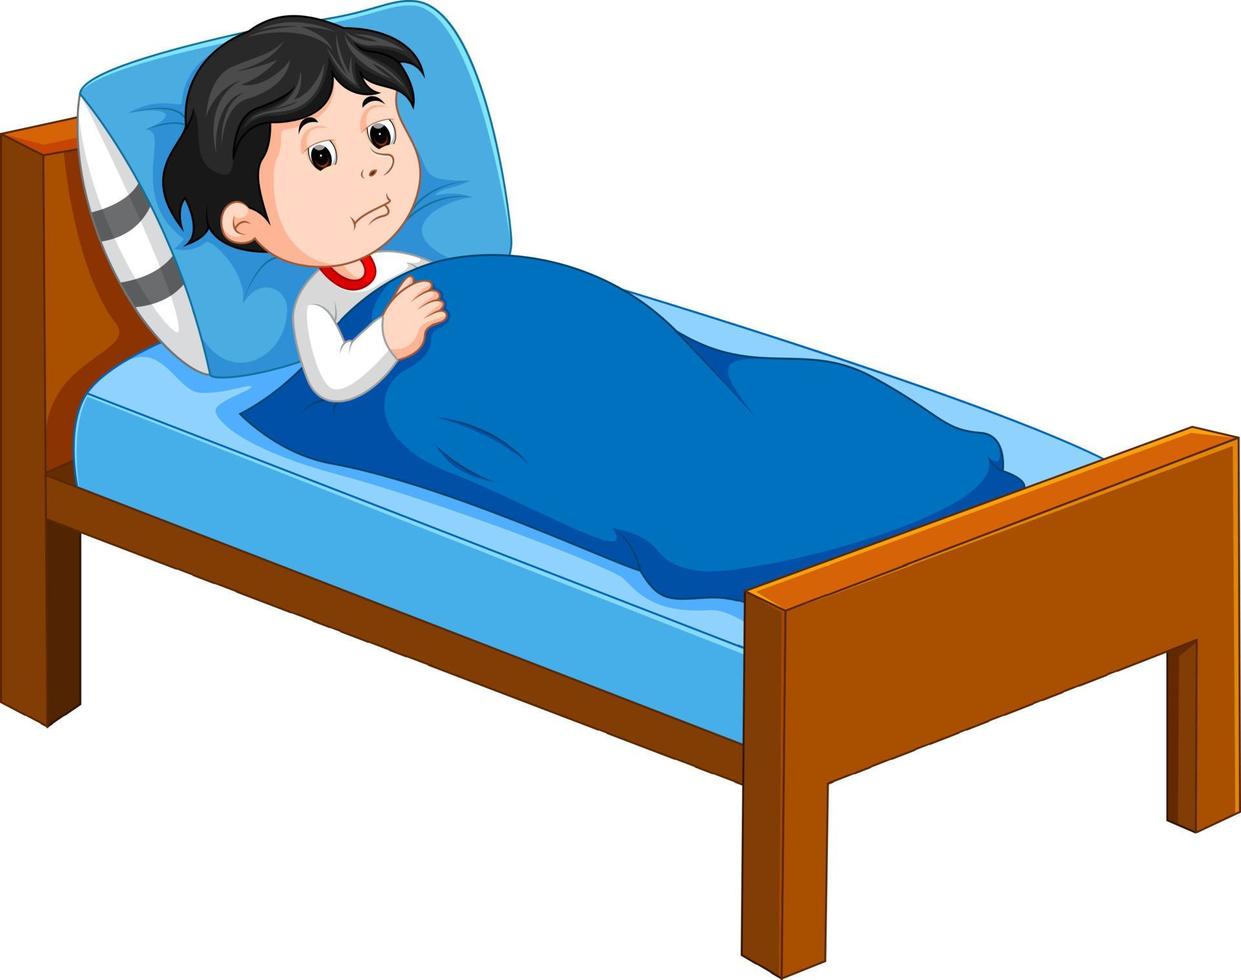 Sick kid lying in bed vector